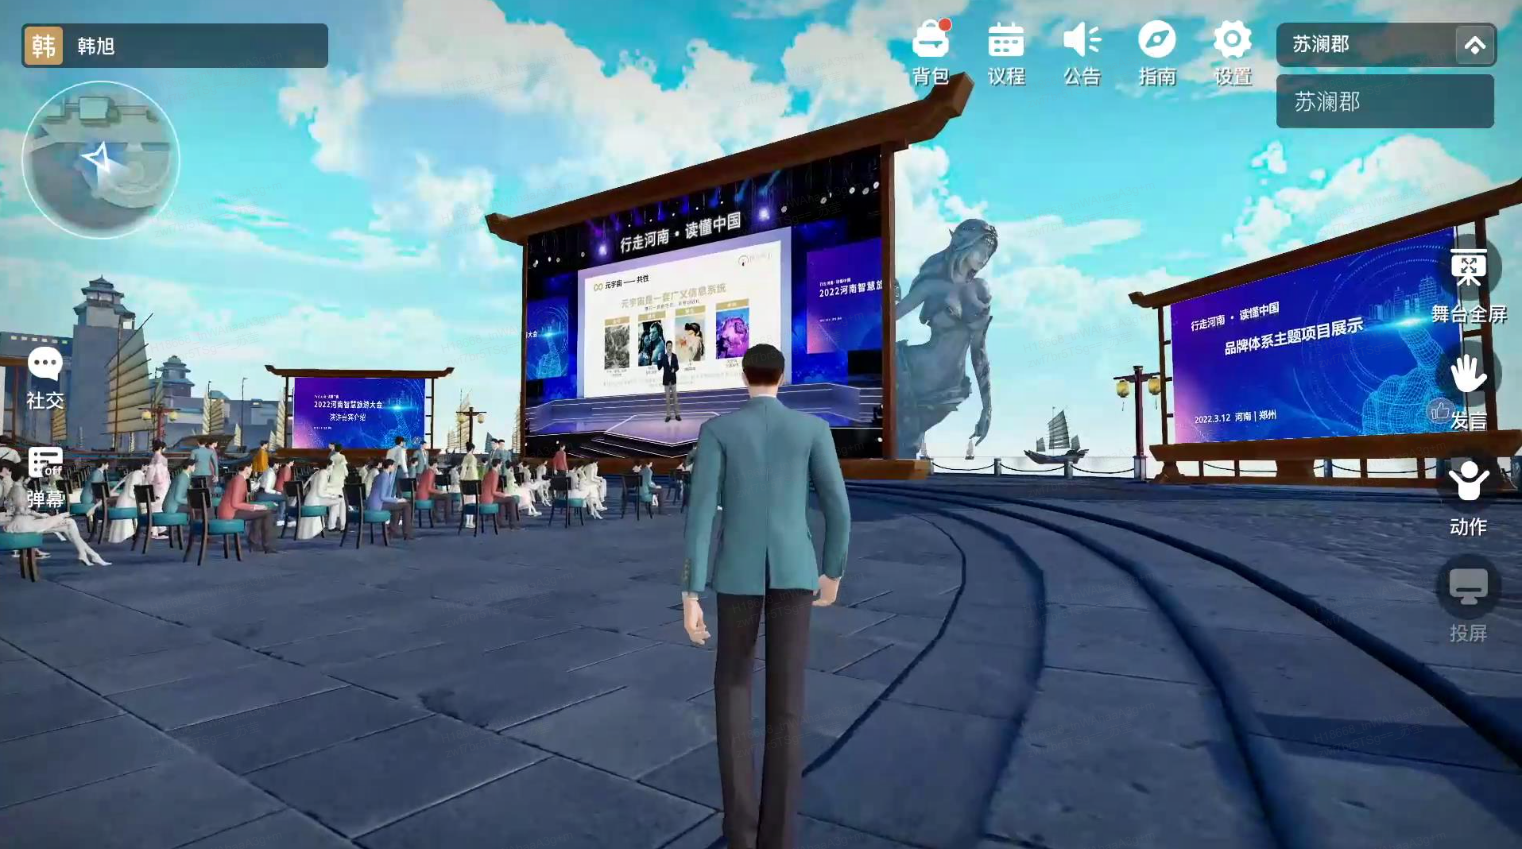 图片展示了一个三维模拟场景，有虚拟角色站在观众面前，背景是大屏幕和现代化的户外聚会场所。